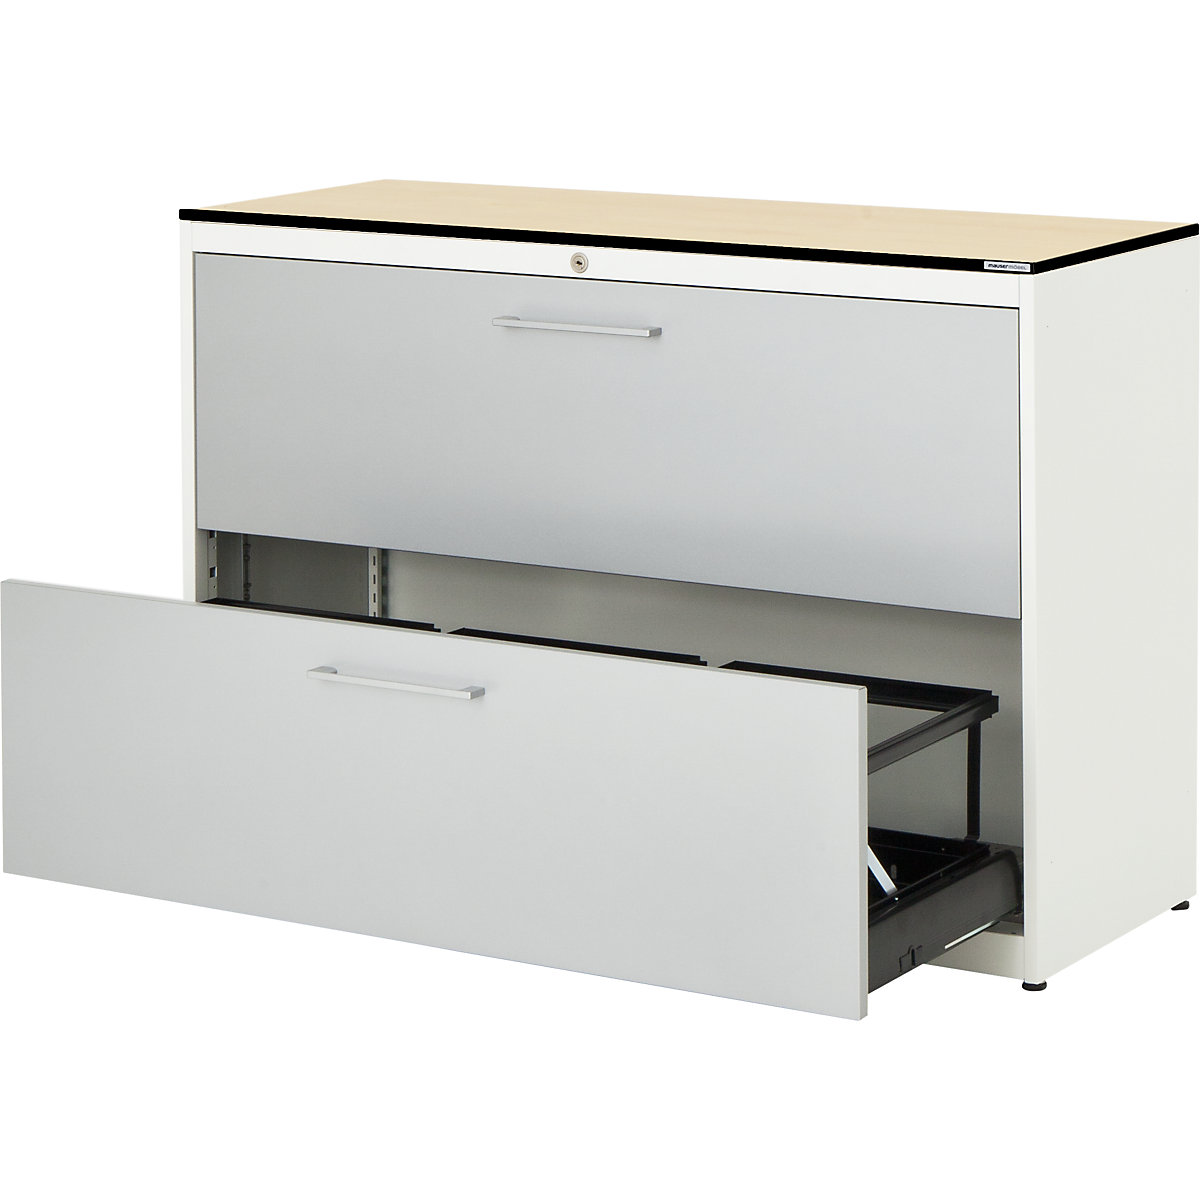 Függő irattartós szekrény – mauser, HPL kompozitlap, 2 fiók, 3 pályás, csapódásgátlóval, tiszta fehér / fehéralumínium / juhar-3